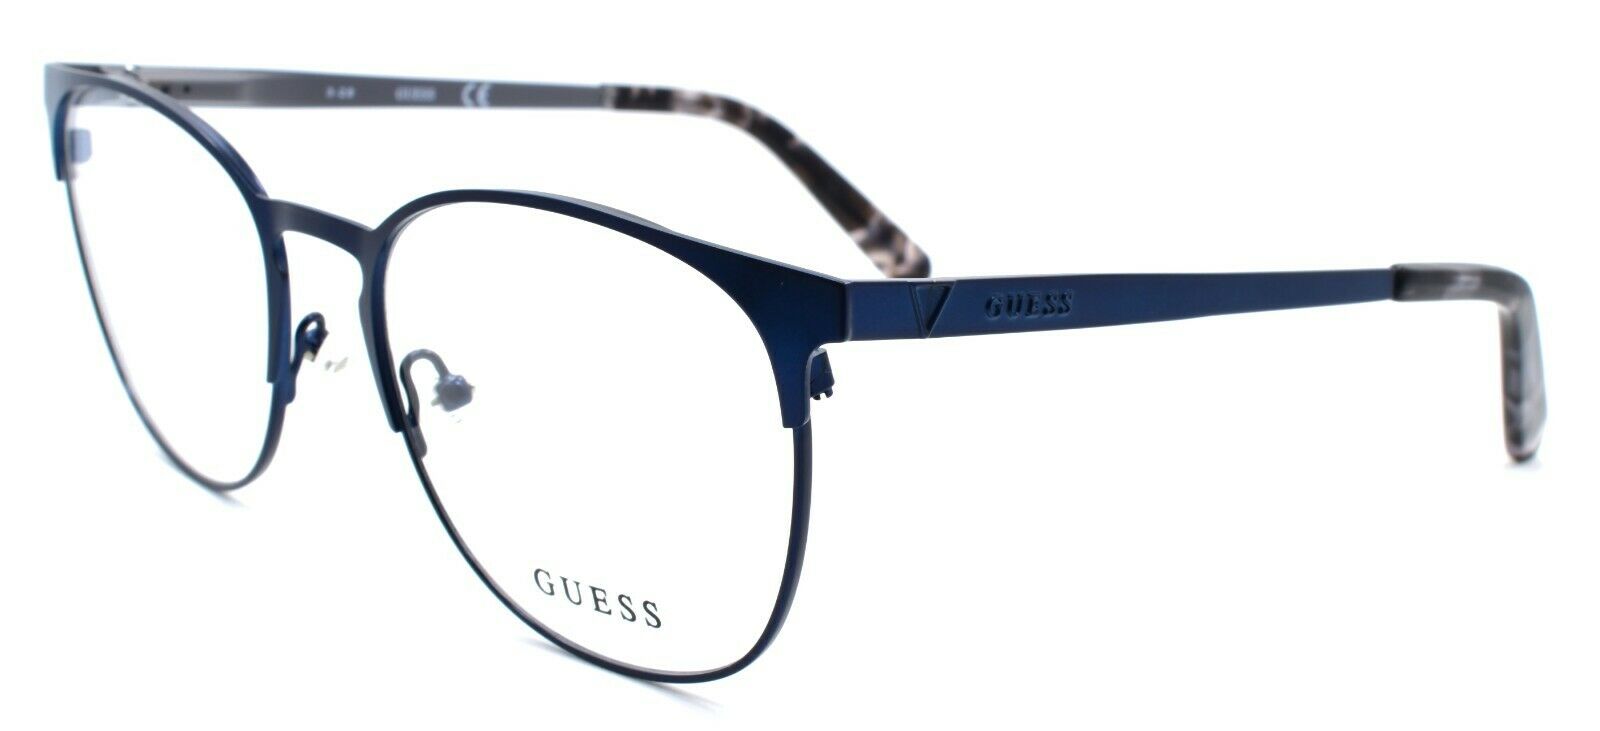 1-GUESS GU1976 091 Men's Eyeglasses Frames 53-18-145 Matte Blue-889214043405-IKSpecs